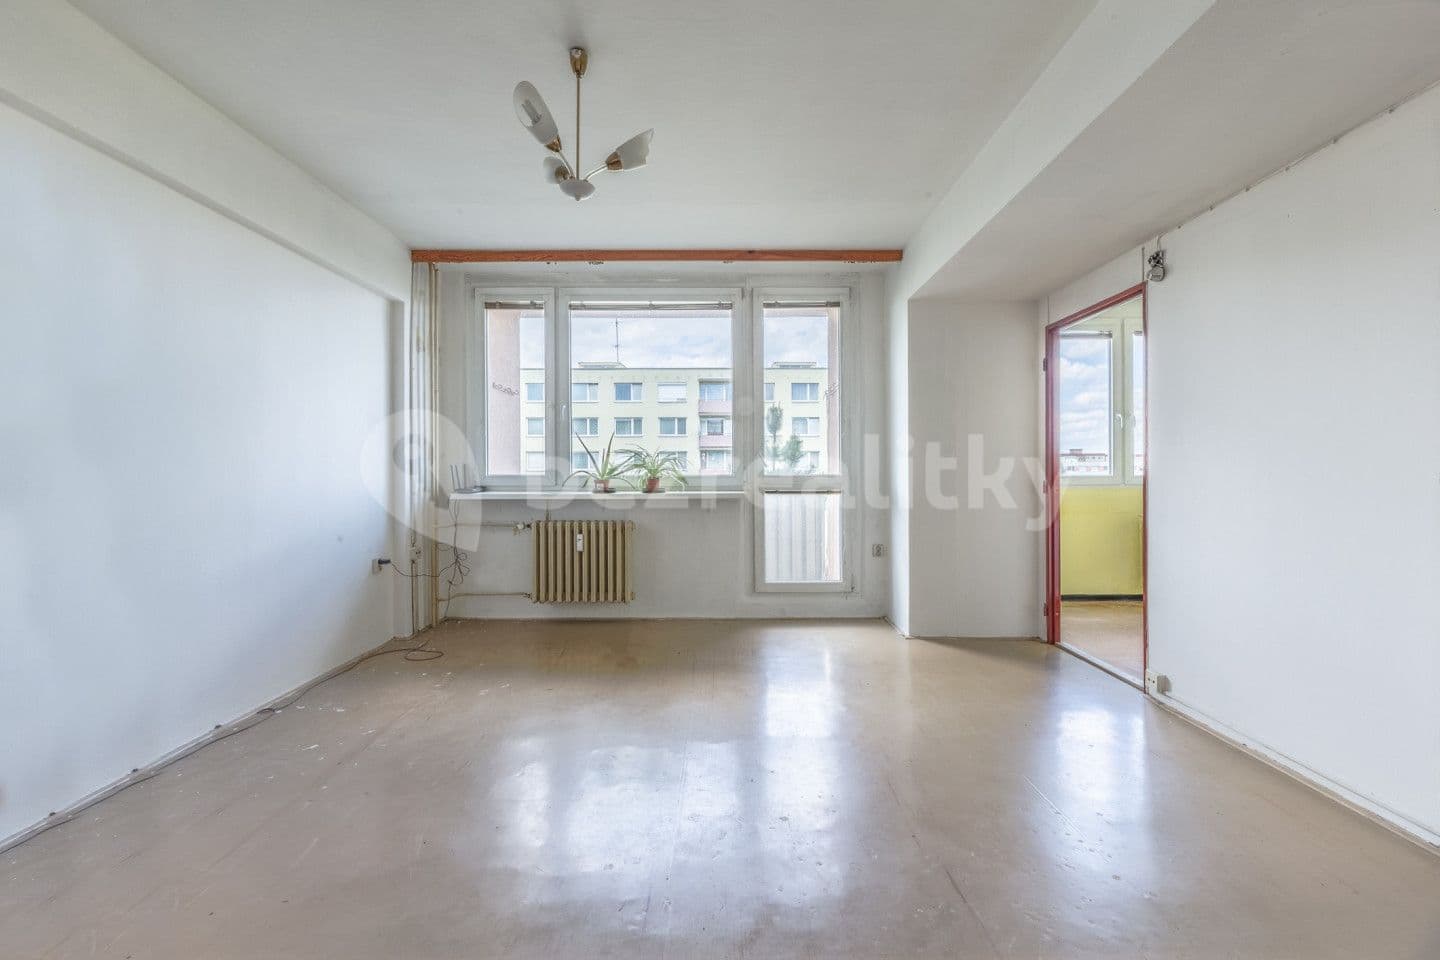 1 bedroom flat for sale, 43 m², U stadionu, Mladá Boleslav, Středočeský Region